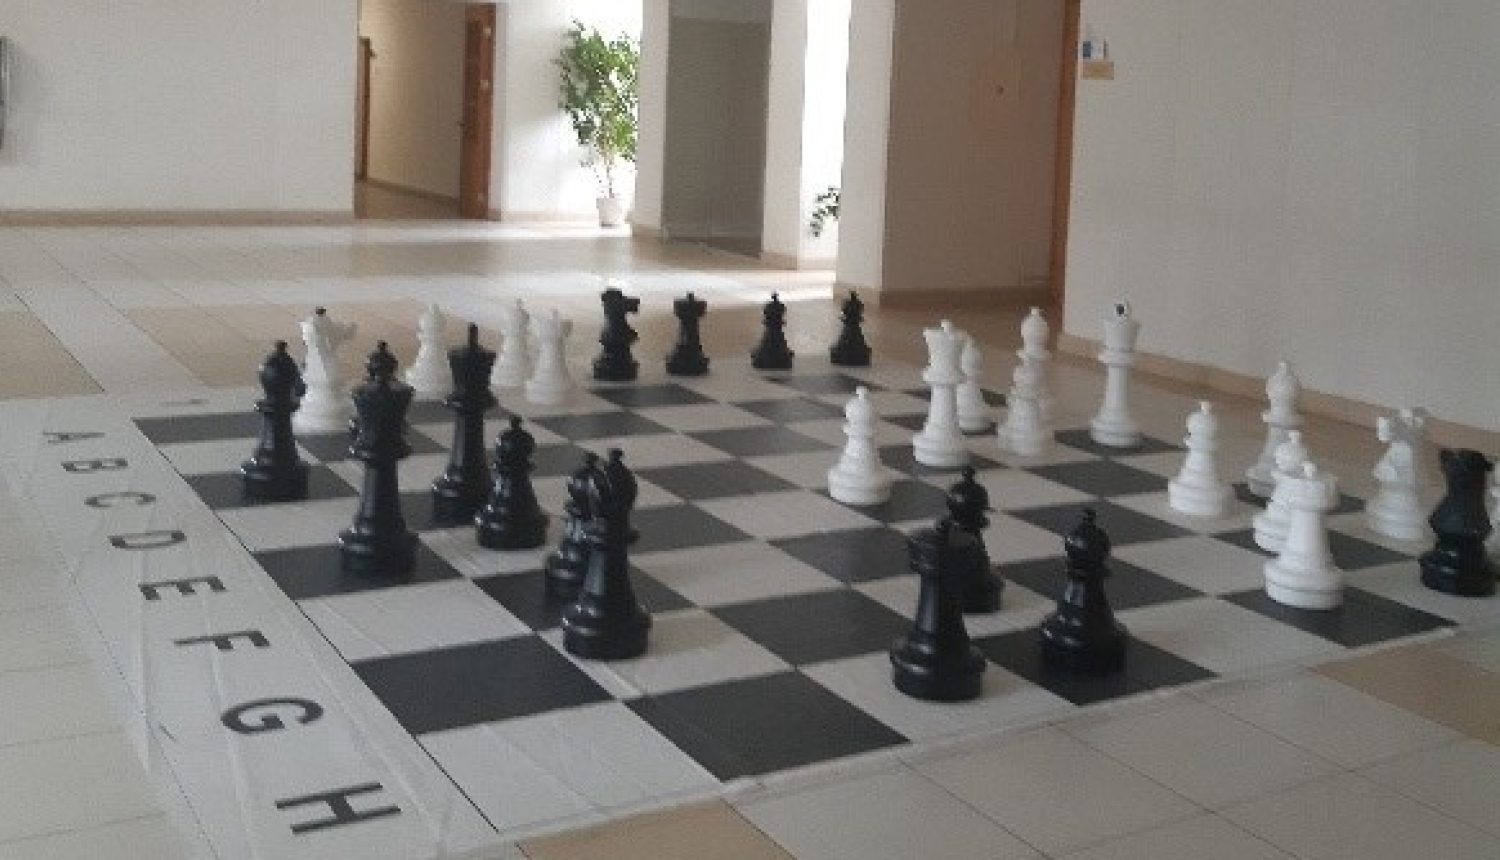 Liels šaha spēles laukums Lietuvas policijas izglītības iestādes gaitenī